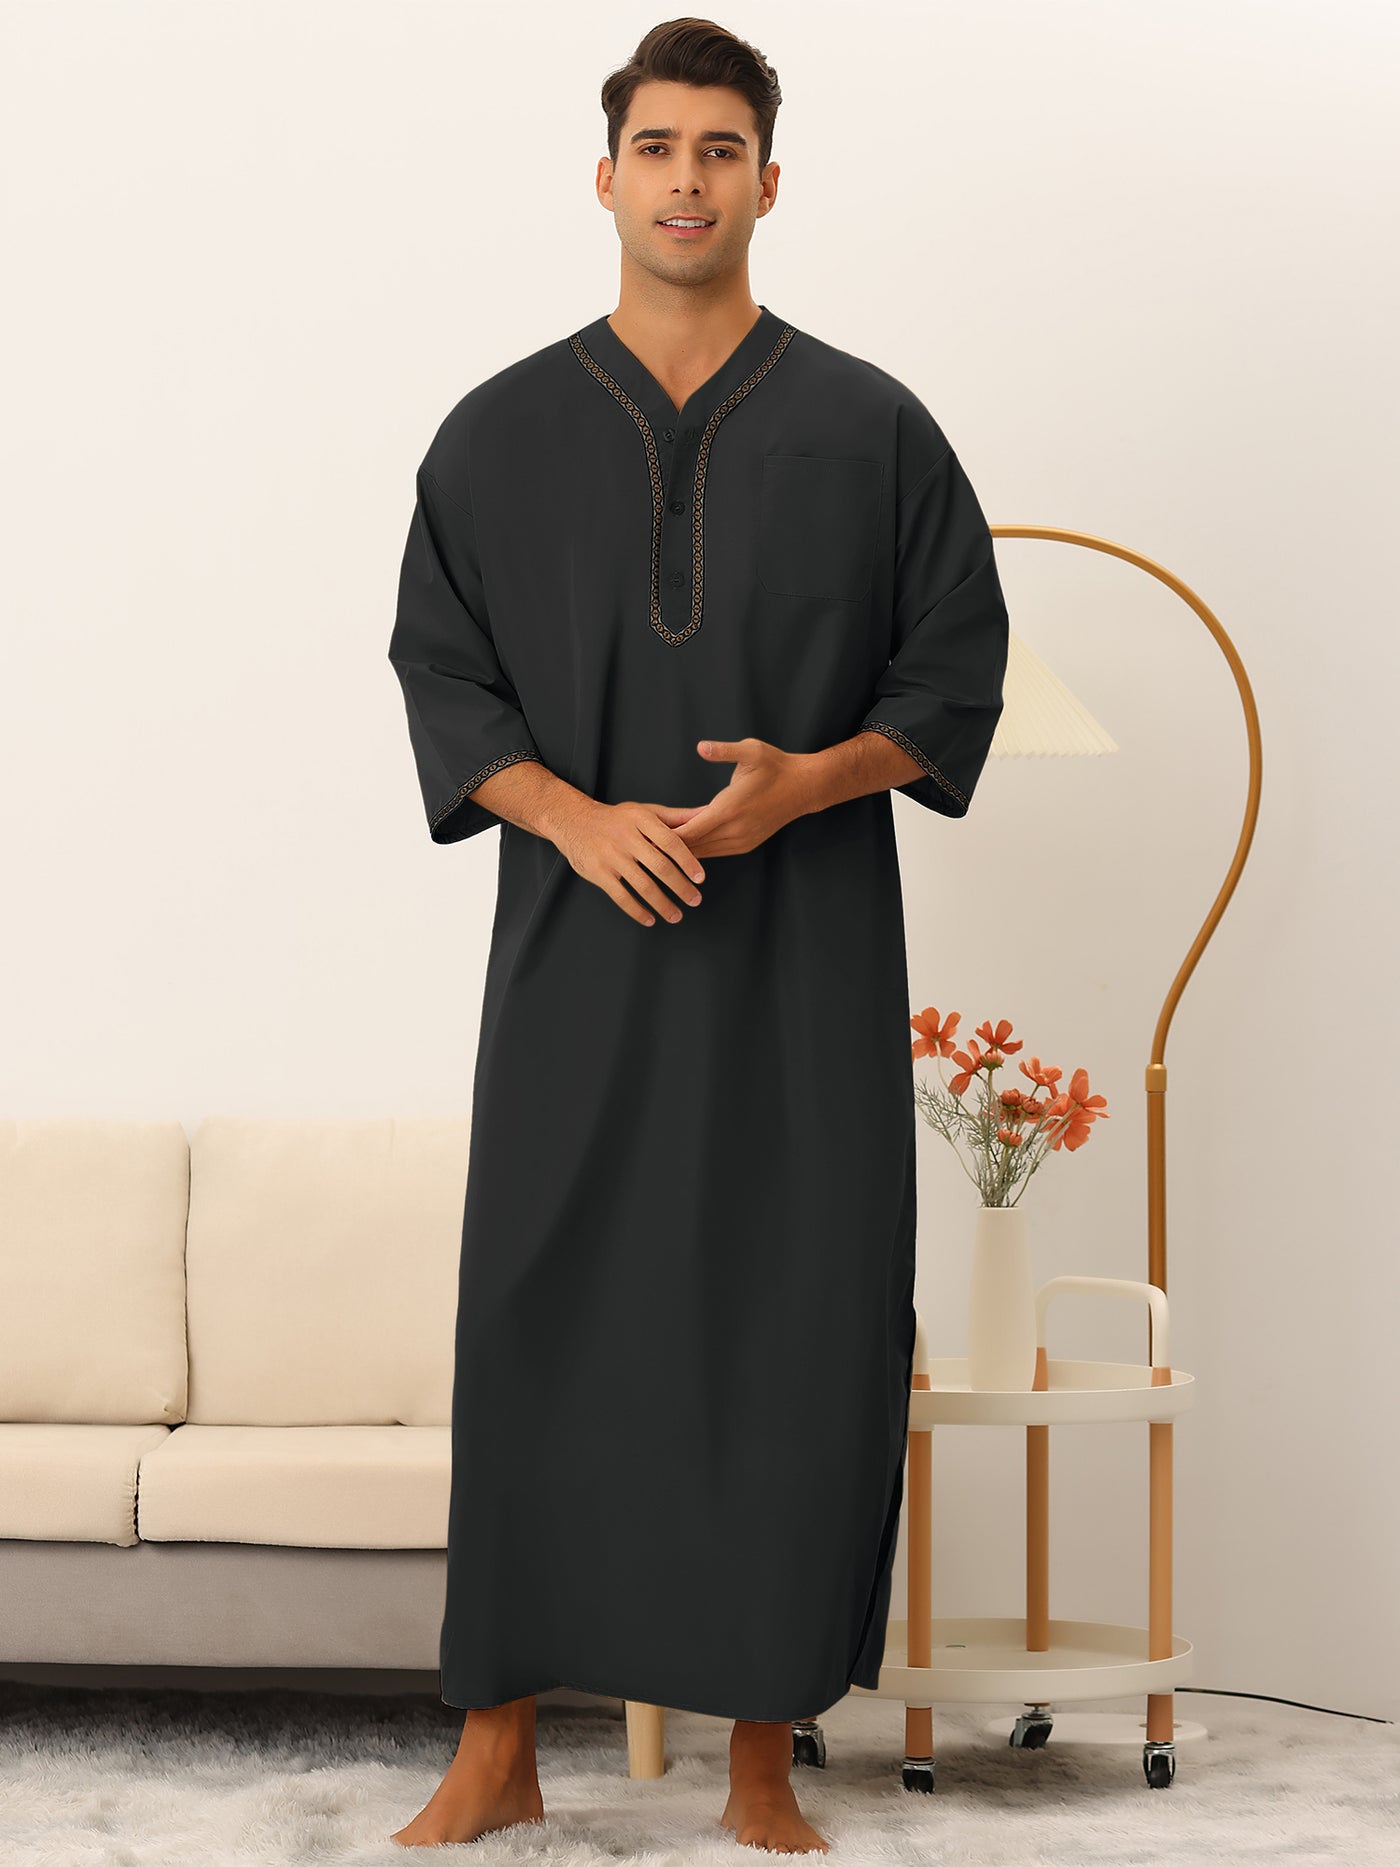 Bublédon Men's Nightshirt Short Sleeves Button Loose Fit Pajamas Loungewear Gown Nightwear